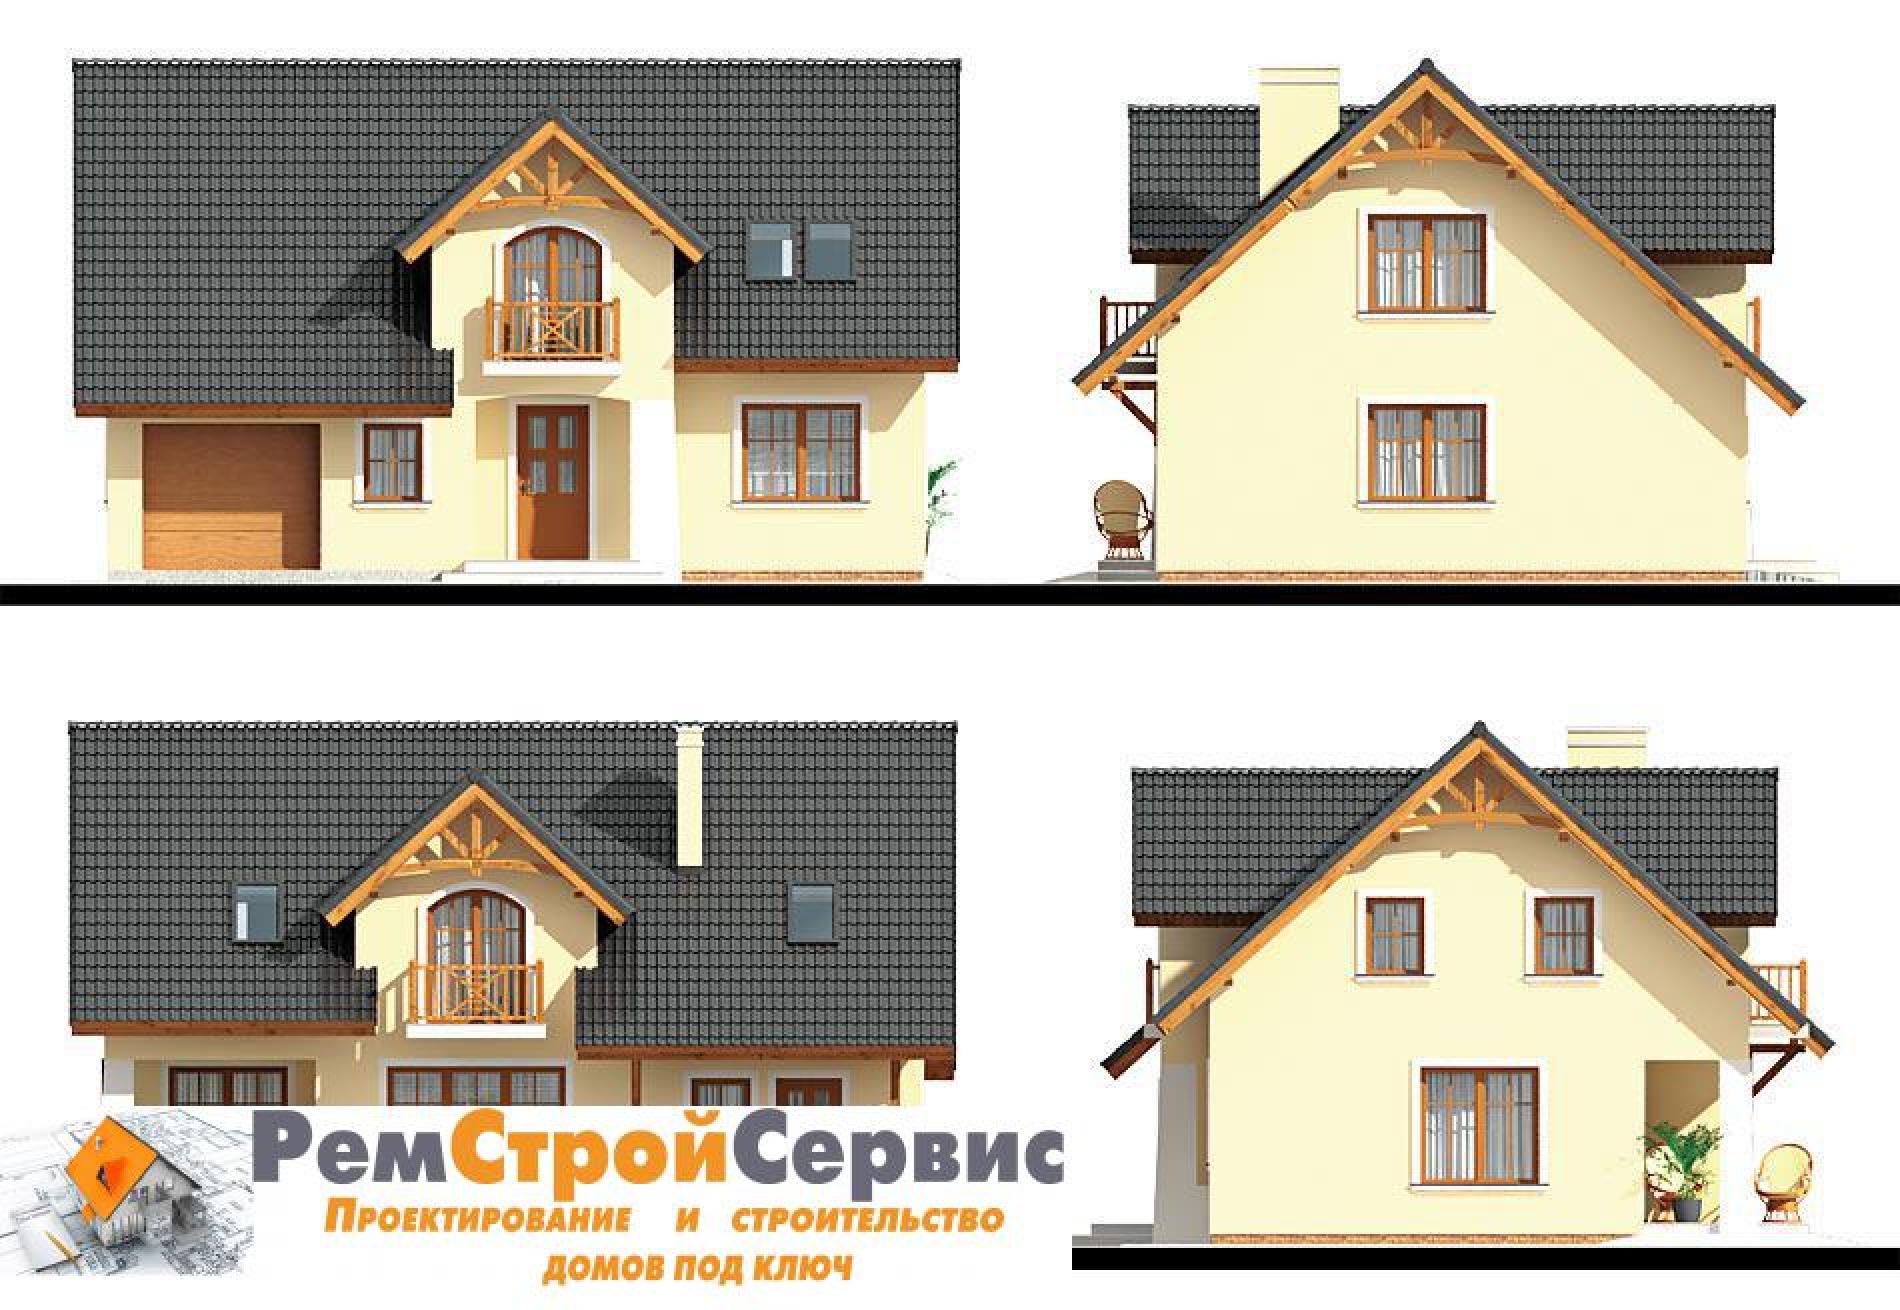 Фасады проекта дома №pl-103 pl-103_f2.jpg